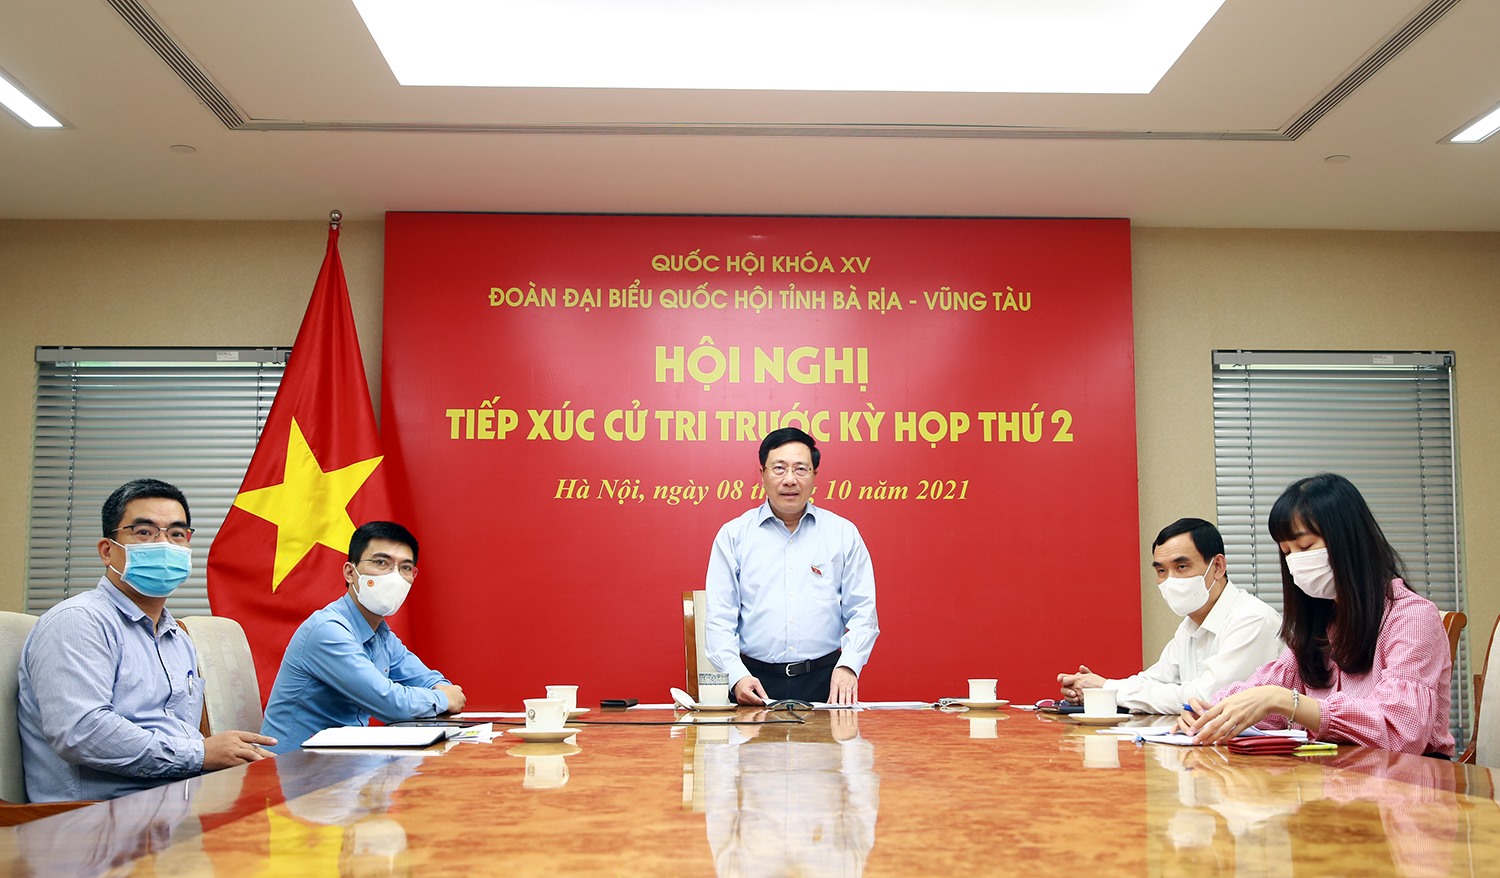 Phó Thủ tướng Phạm Bình Minh tiếp xúc cử tri tại tỉnh Bà Rịa-Vũng Tàu theo hình thức trực tuyến - Ảnh: VGP/Hải Minh